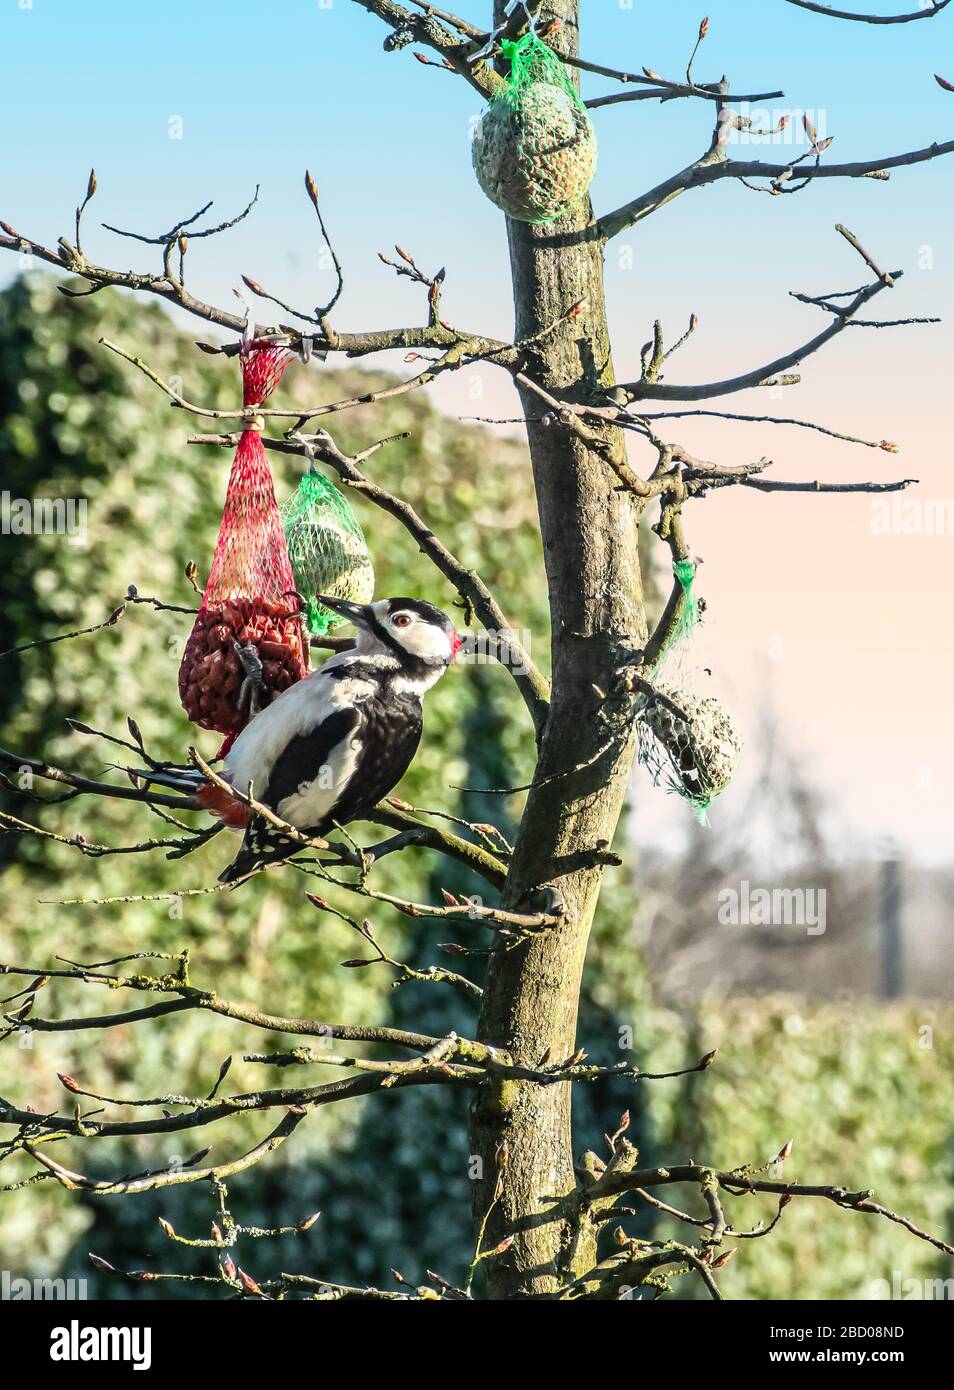 Un grand pic à pois est accroché dans un arbre de hêtre chauve, mangeant des arachides d'un filet d'alimentation d'oiseaux un beau matin dans un jardin belge formel. Oiseau mâle. Banque D'Images